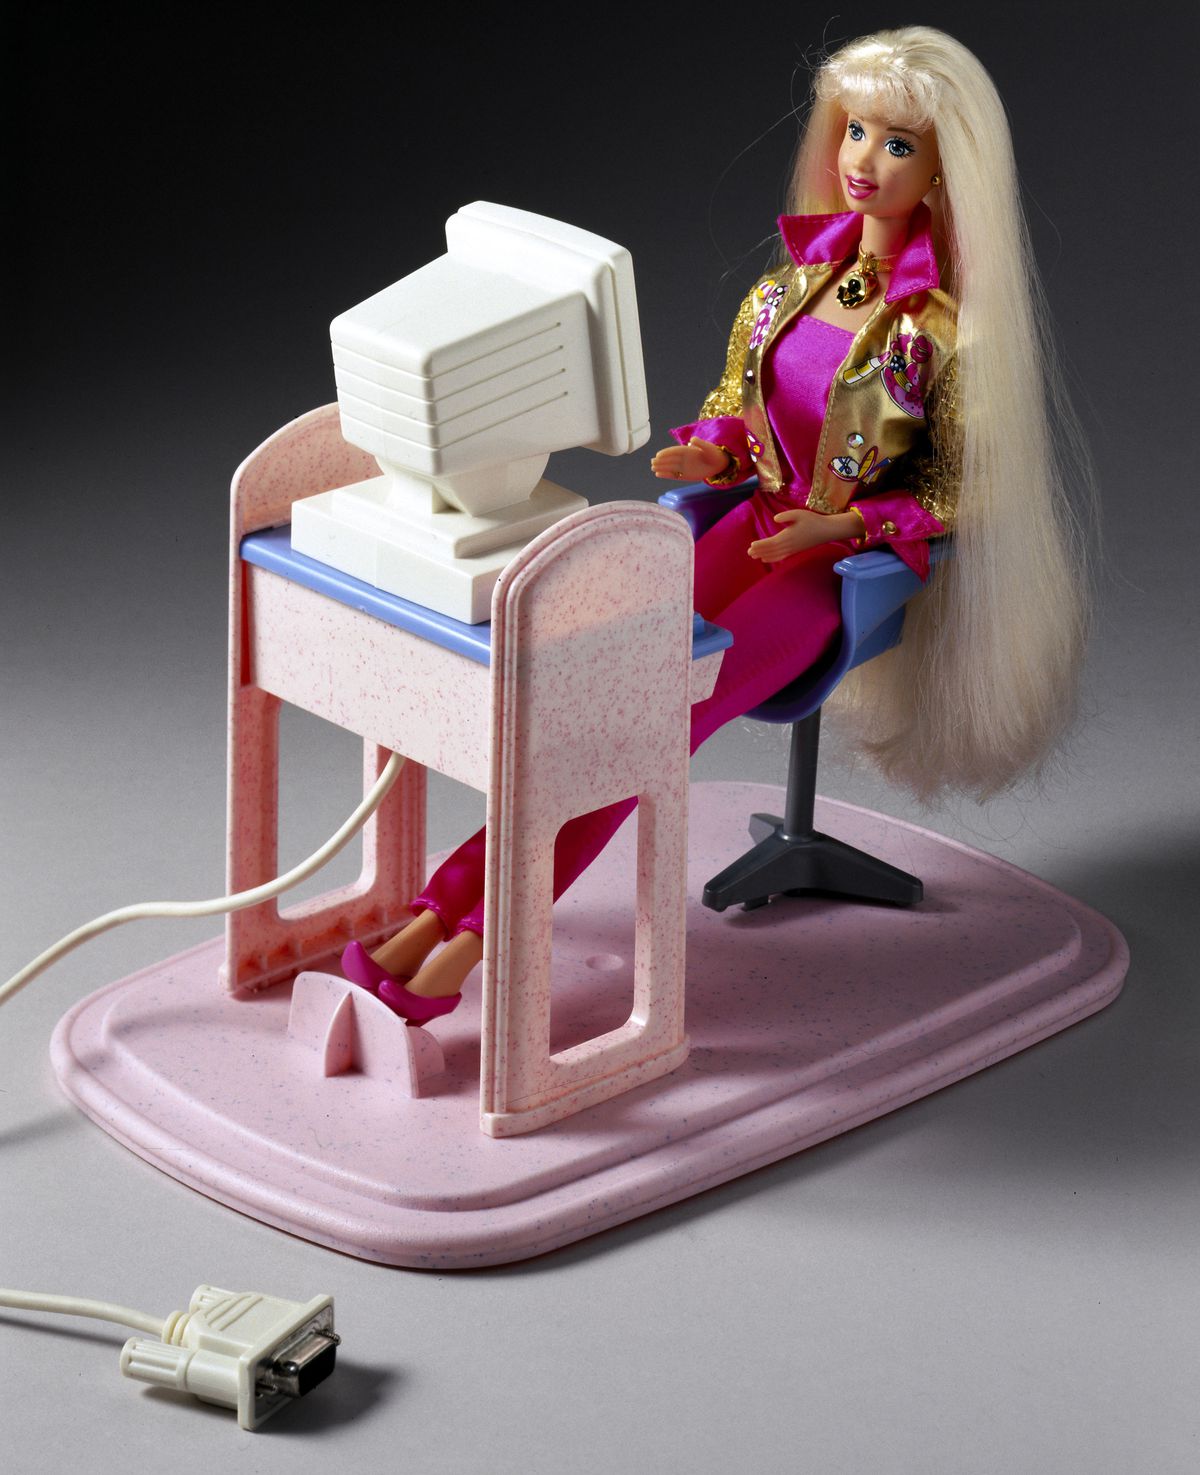 ¡Habla conmigo! Muñeca Barbie, USA, 1997, usando una computadora. Hay un cable saliendo de su máquina.